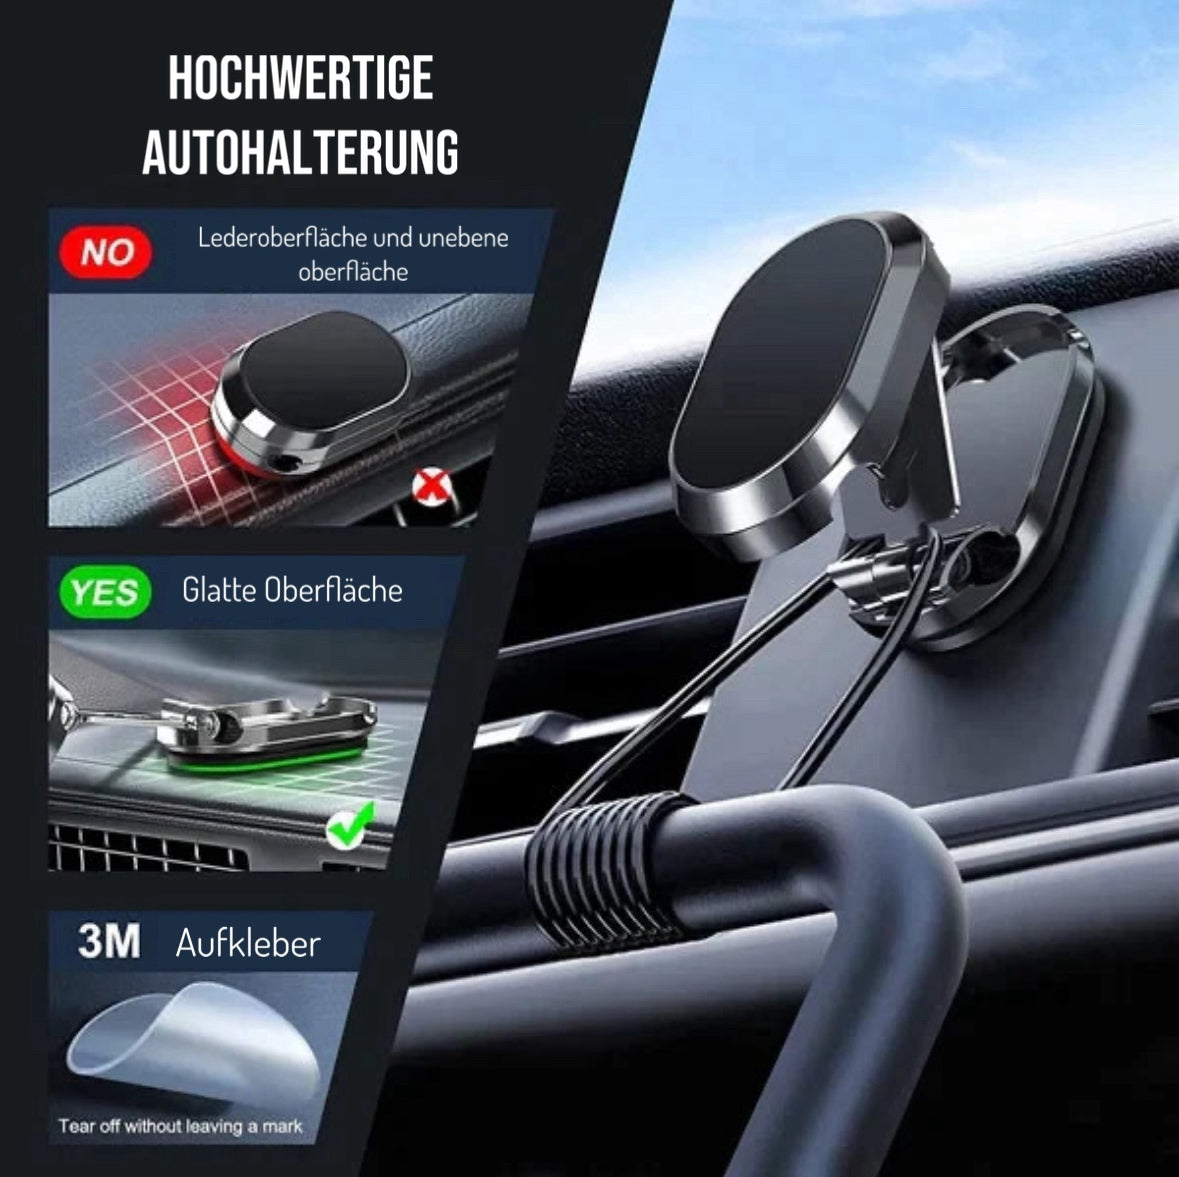 "MagAuto" Magnetisch klappbarer Handyhalter für das Auto